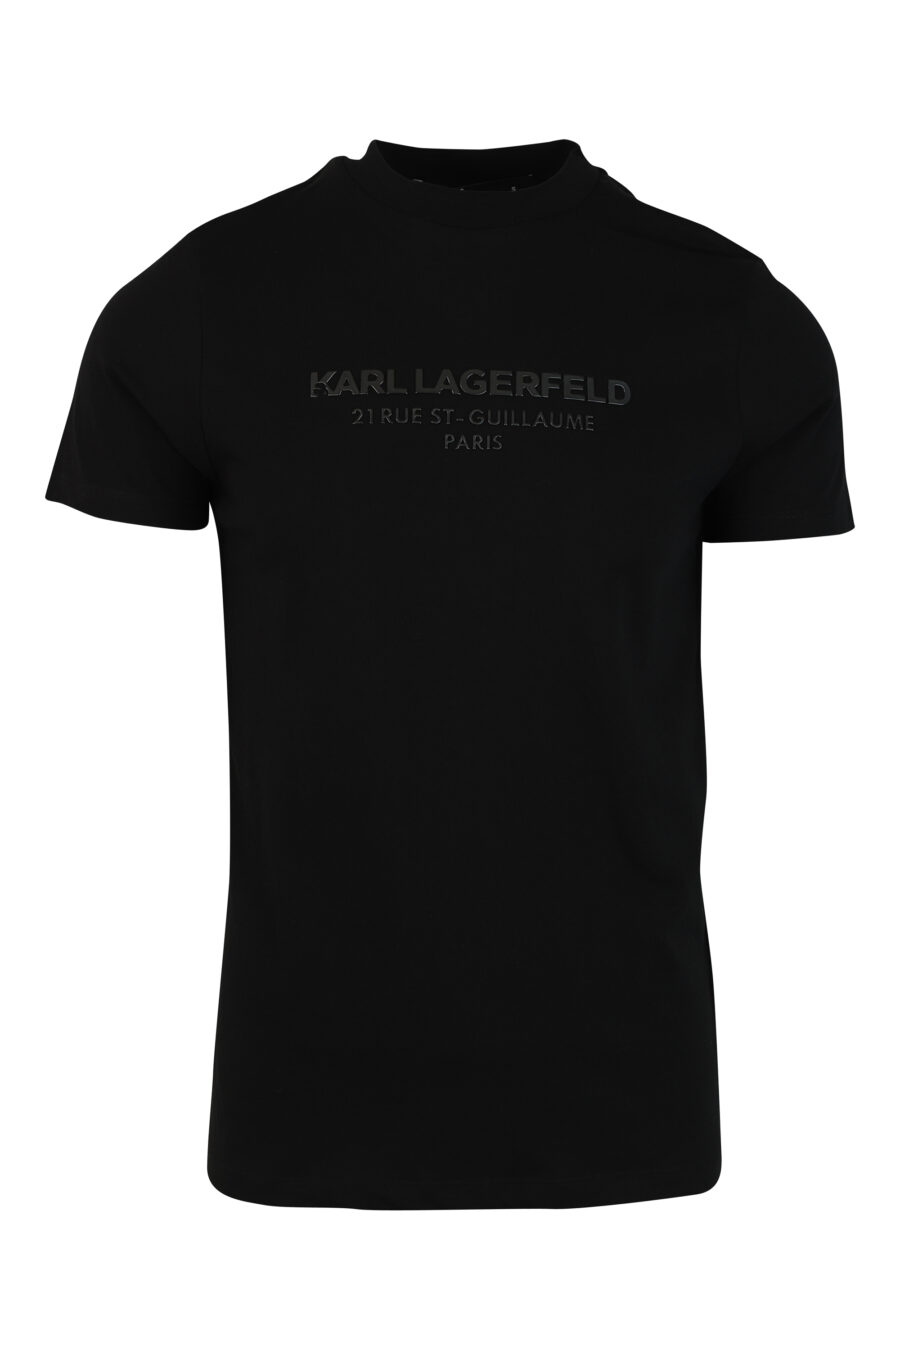 Camiseta negra con logo monocromático "rue st guillaume" - 4062226289306